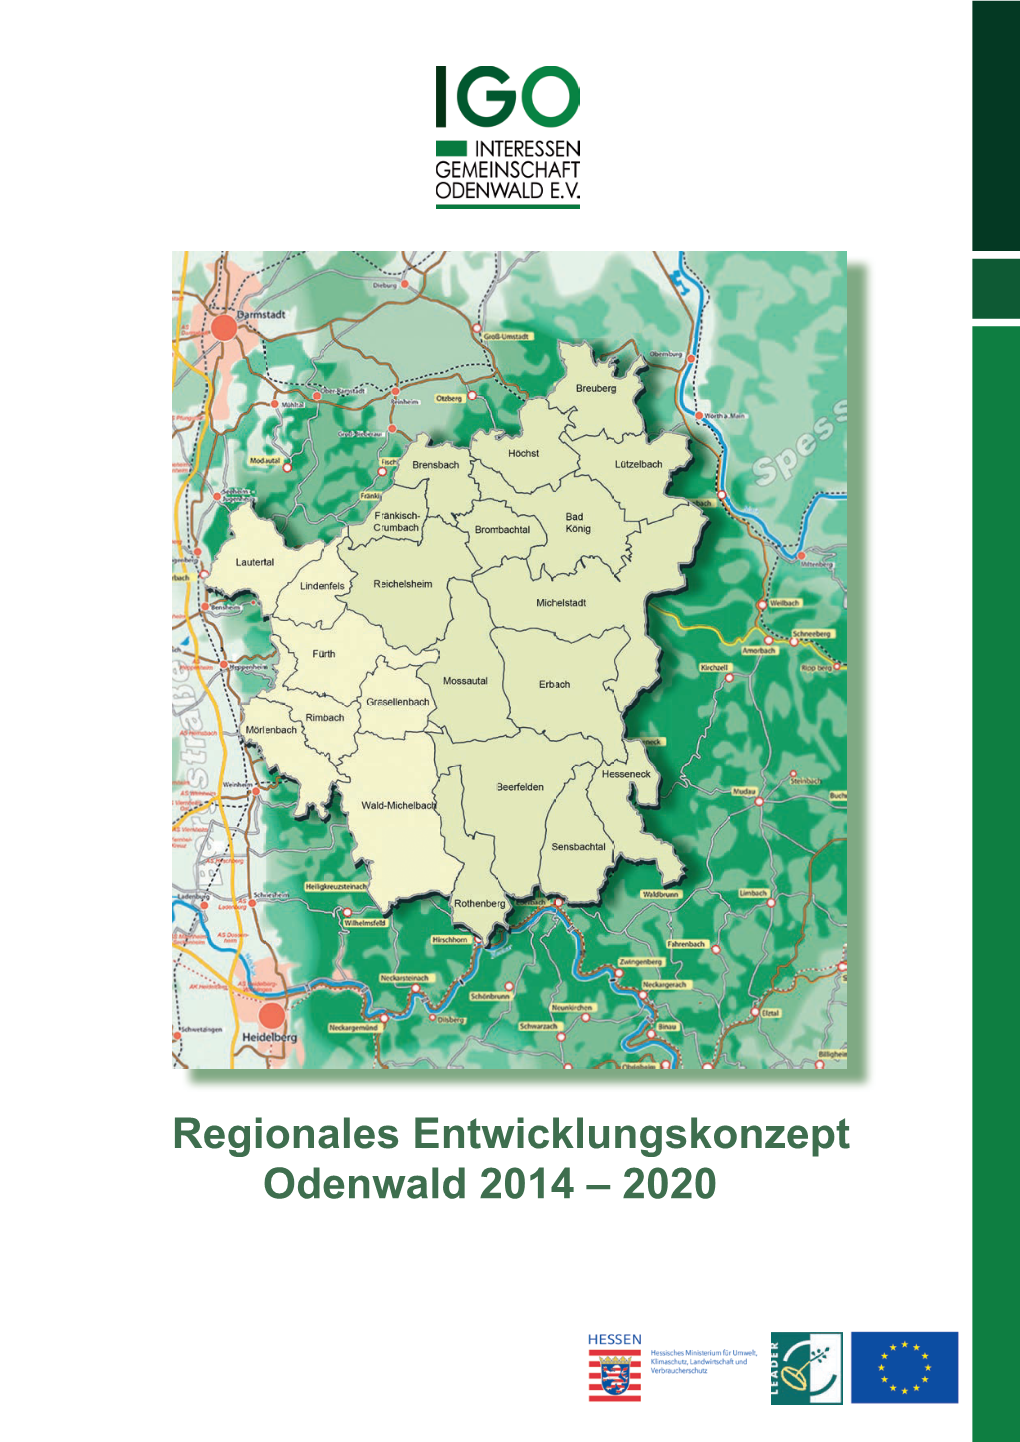 Regionales Entwicklungskonzept Odenwald 2014 – 2020 IGO - INTERESSEN GEMEINSCHAFT ODENWALD E.V: Regionales Entwicklungskonzept Odenwald 2014 – 2020 IMPRESSUM